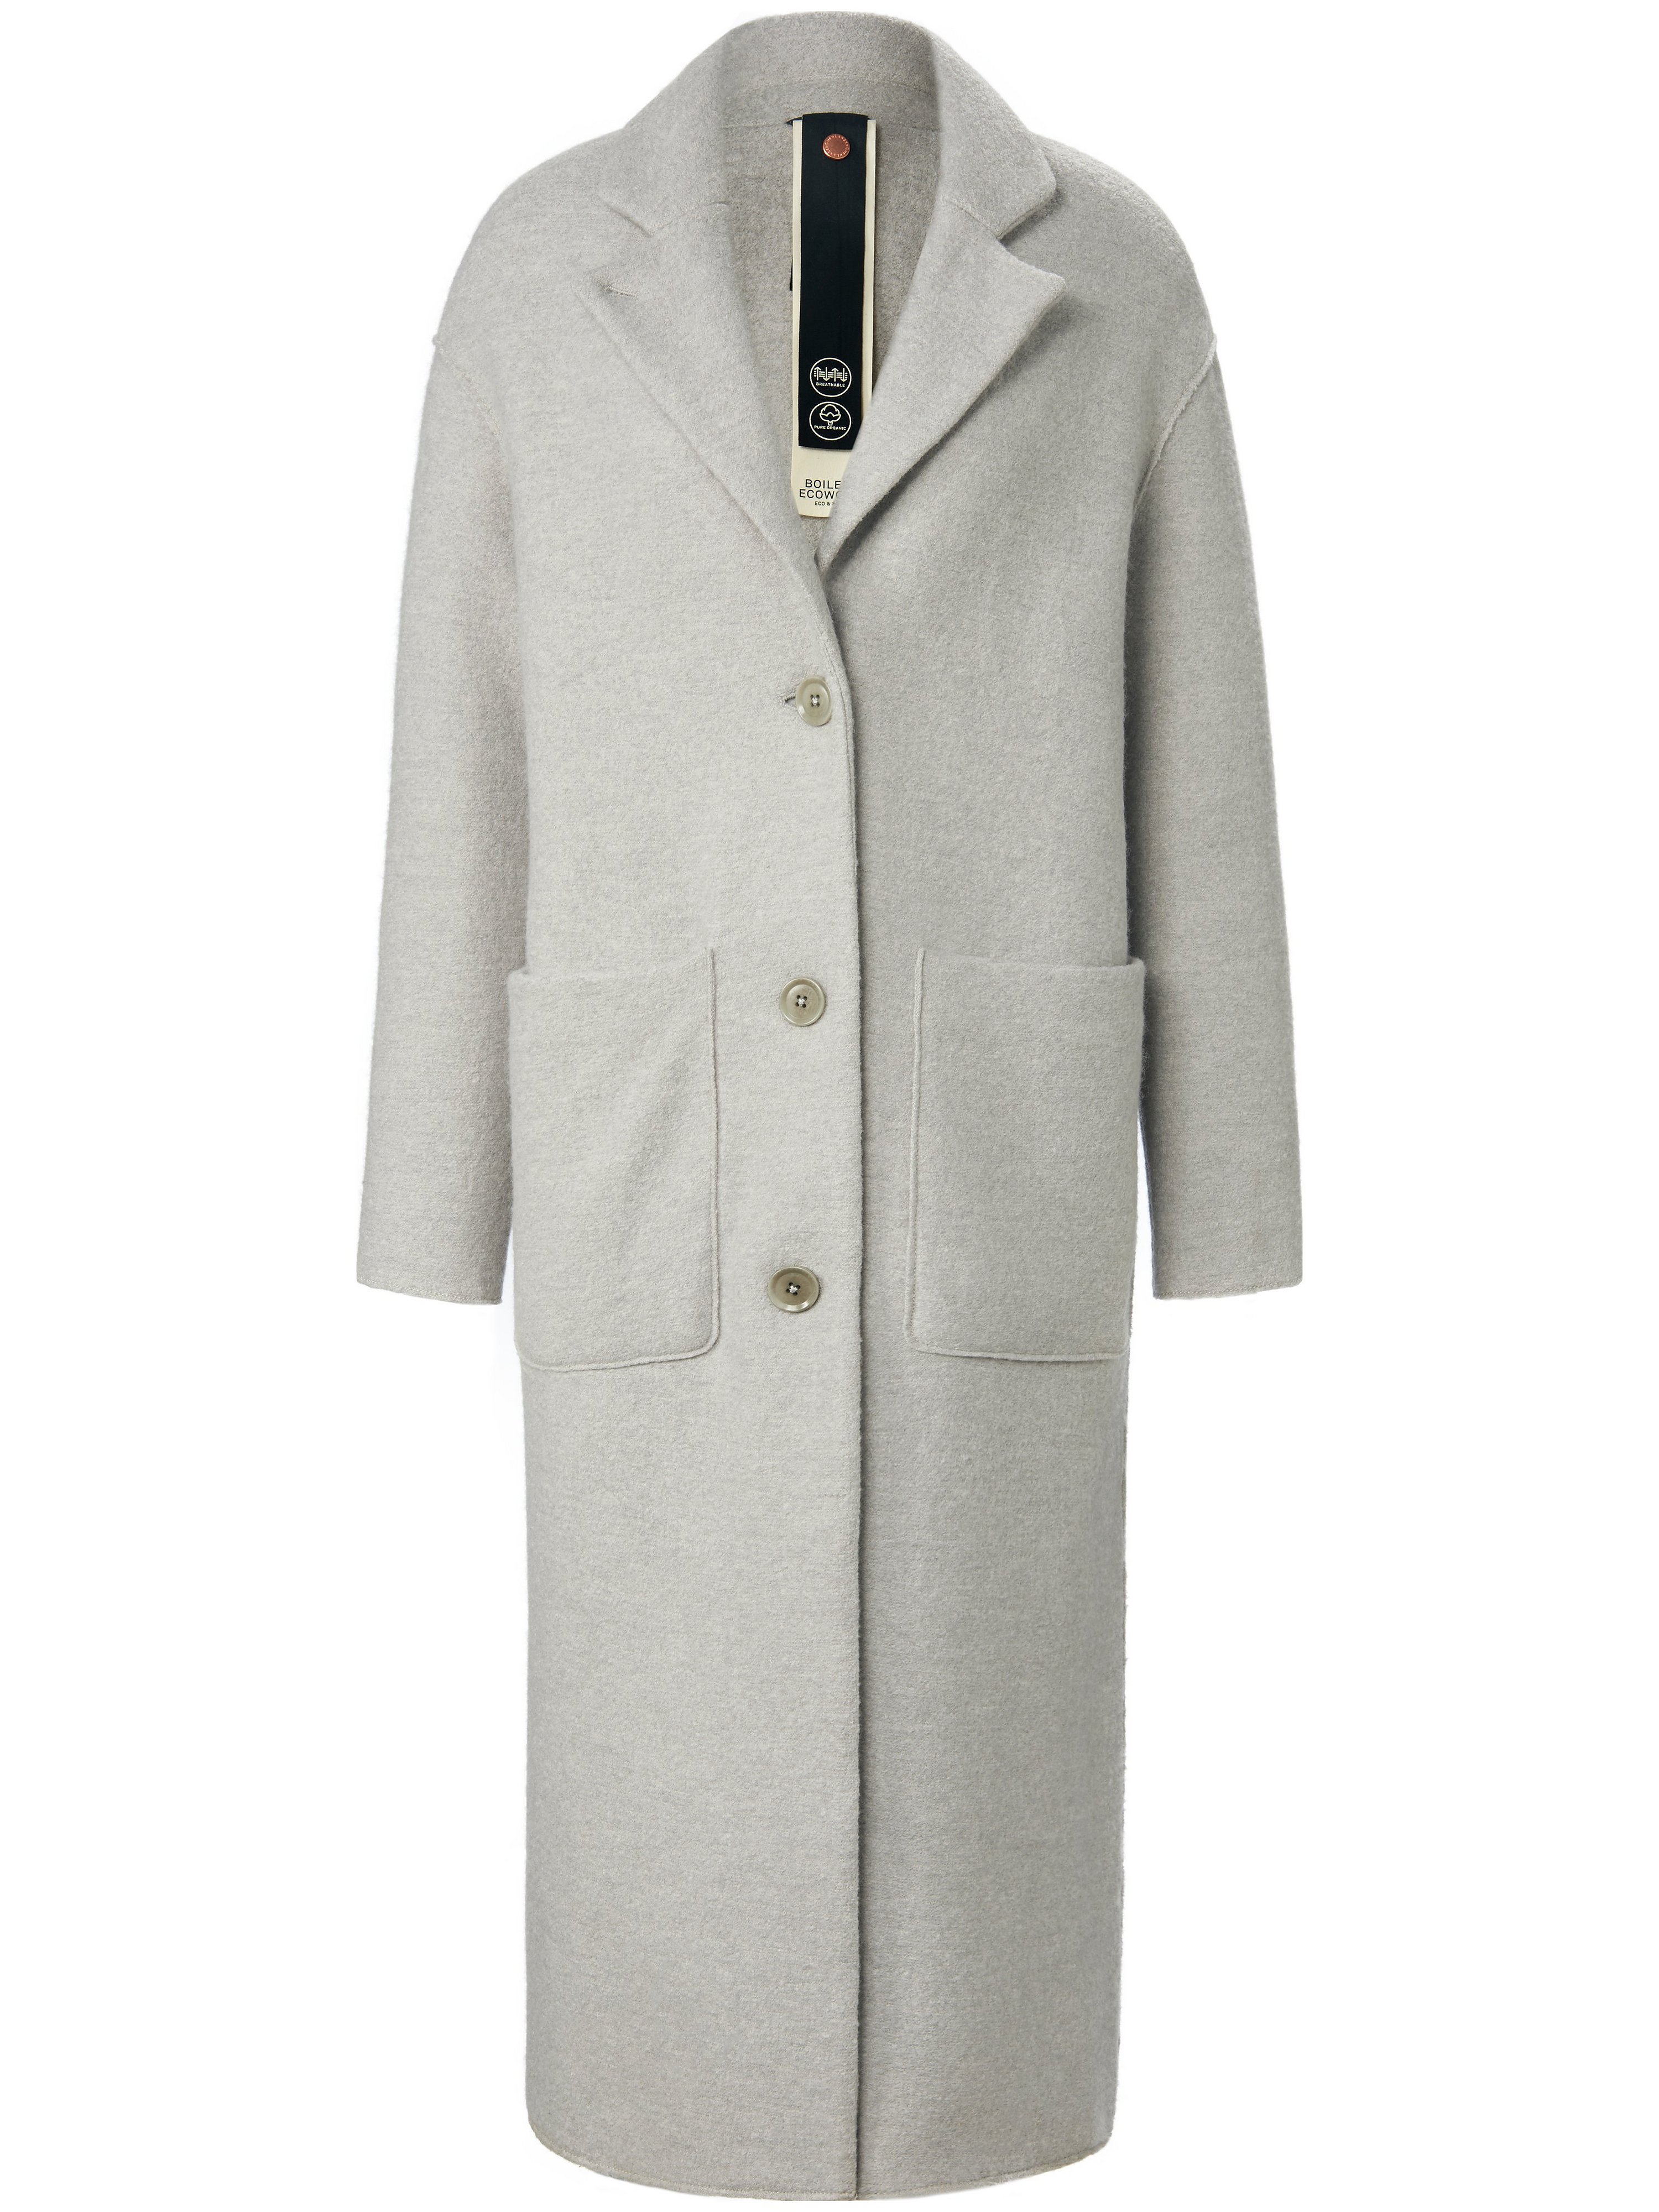 Le manteau 100% laine vierge  LangerChen gris